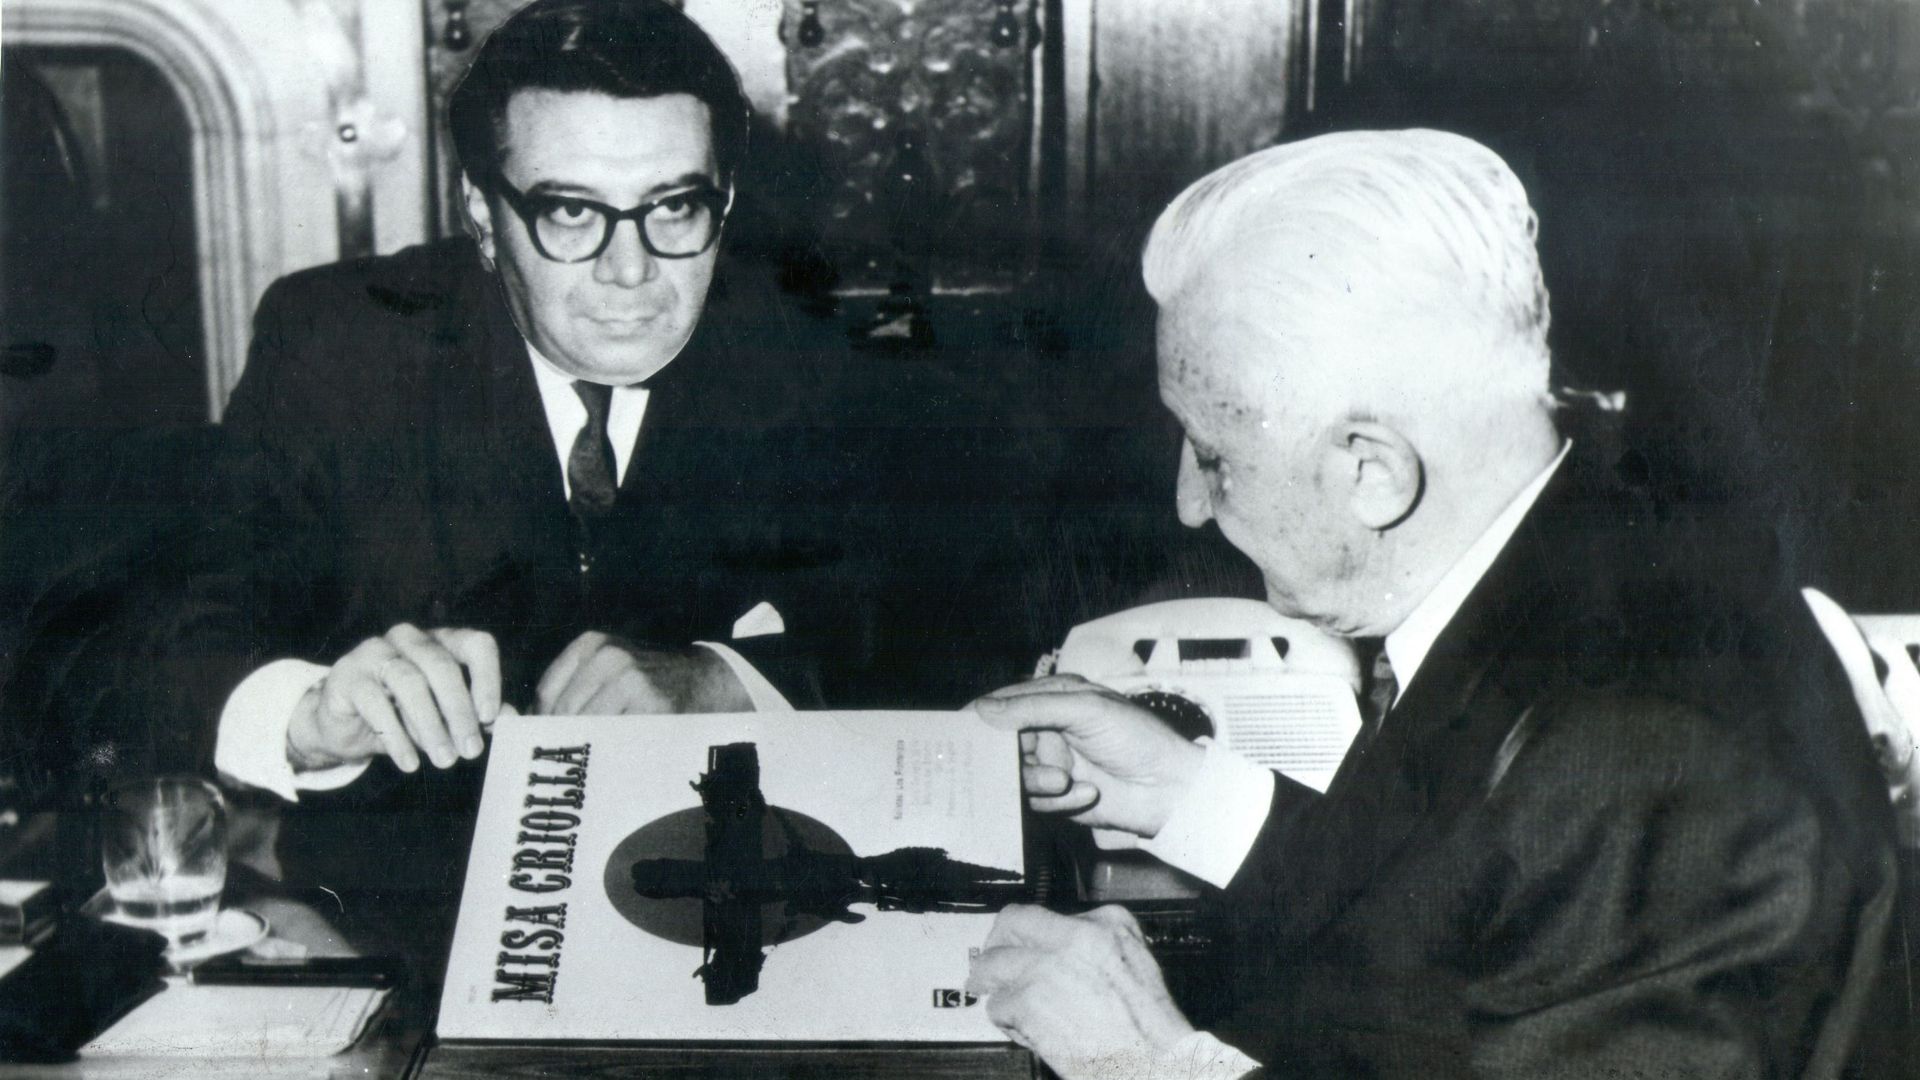 Ariel Ramirez (gauche) remet l’album de la Misa Criolla au Président argentin Arturo Illia (1900-1983) lors d’une audience officielle à Buenos Aires, en 1965.